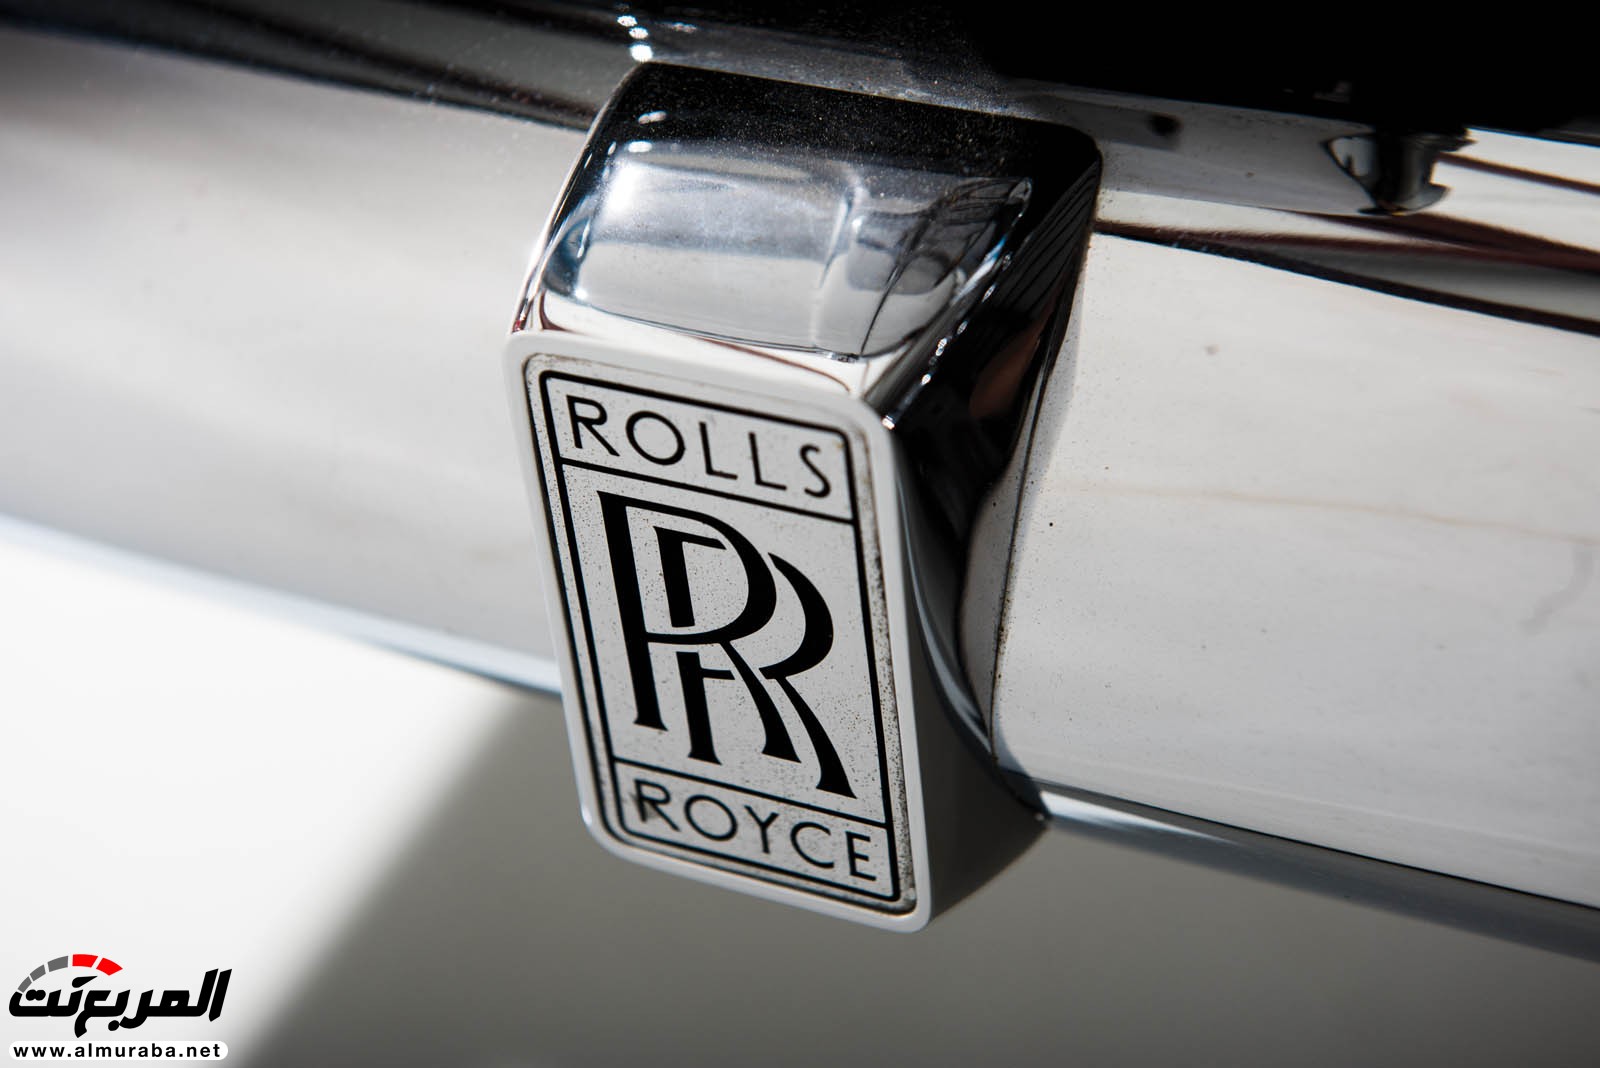 "رولز رويس" سيلفر كلاود 1959 ذات هيكلة الواجن تتوجه لتباع في مزاد عالمي Rolls-Royce Silver Cloud 67